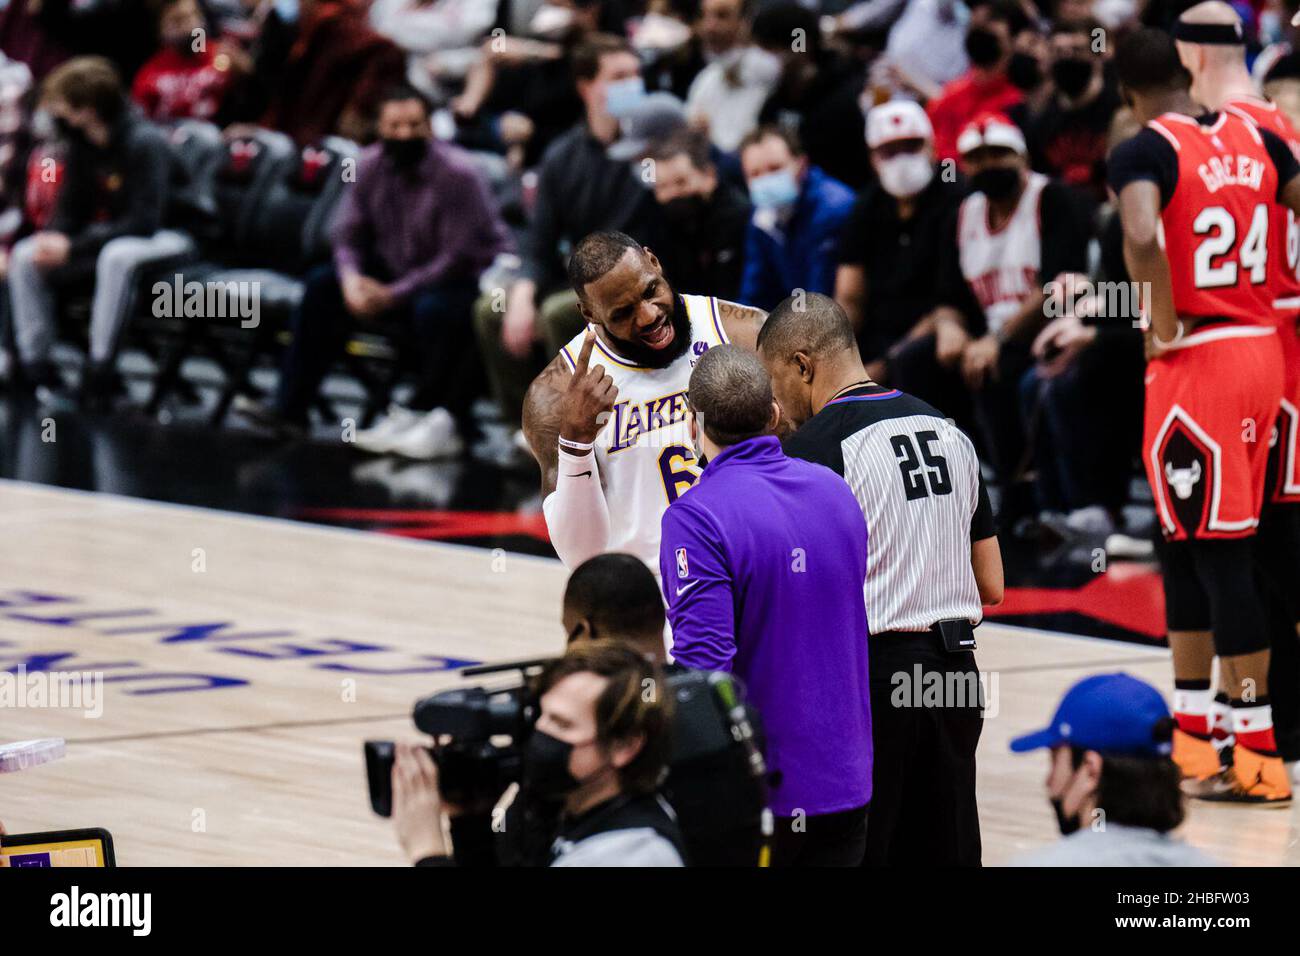 Chicago, Usa. 19th Dez 2021. LeBron James #6 Los Angeles Lakers argumentiert mit dem Schiedsrichter während des Spiels am Sonntag, 19. Dezember 2021 im United Center Shaina Benhiyoun/SPP Credit: SPP Sport Press Photo. /Alamy Live News Stockfoto